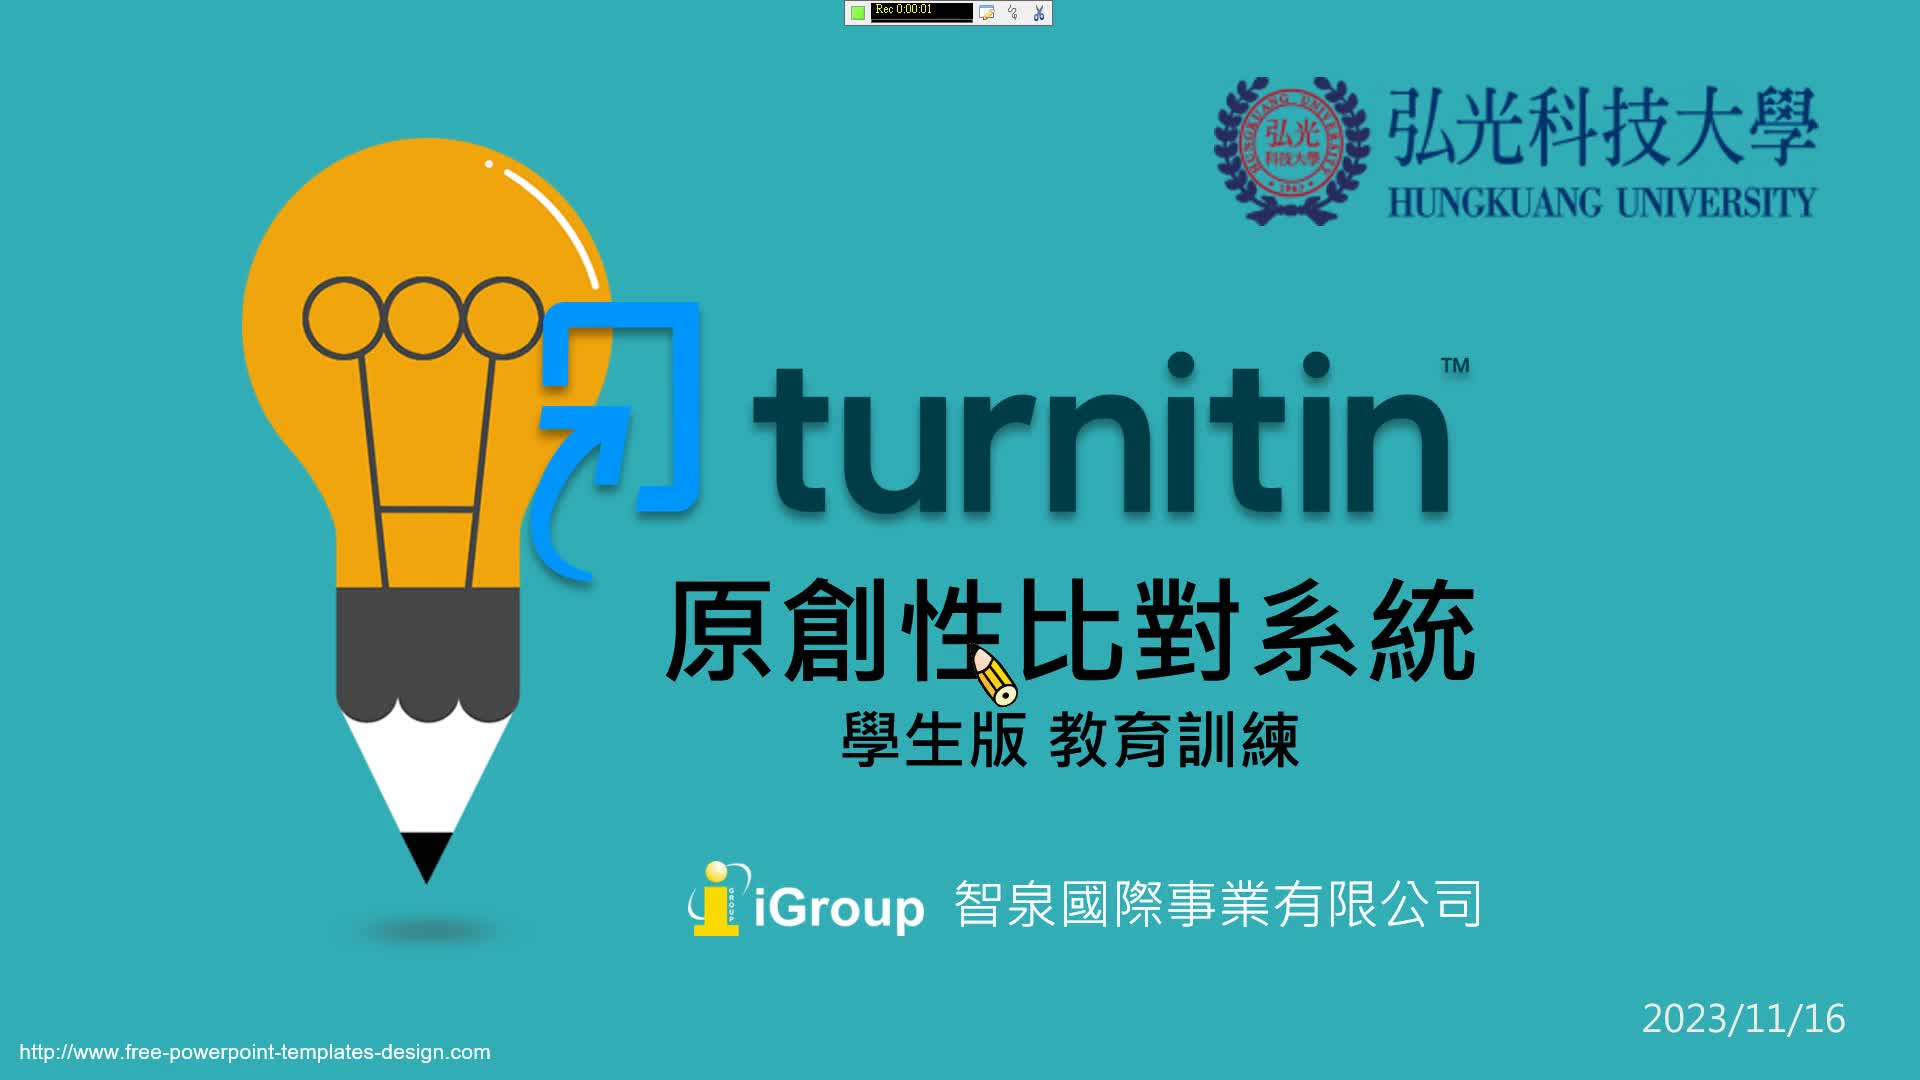 圖書館電子資源-Turnitin原創性論文比對系統(學生版)2023.11.16教育訓練